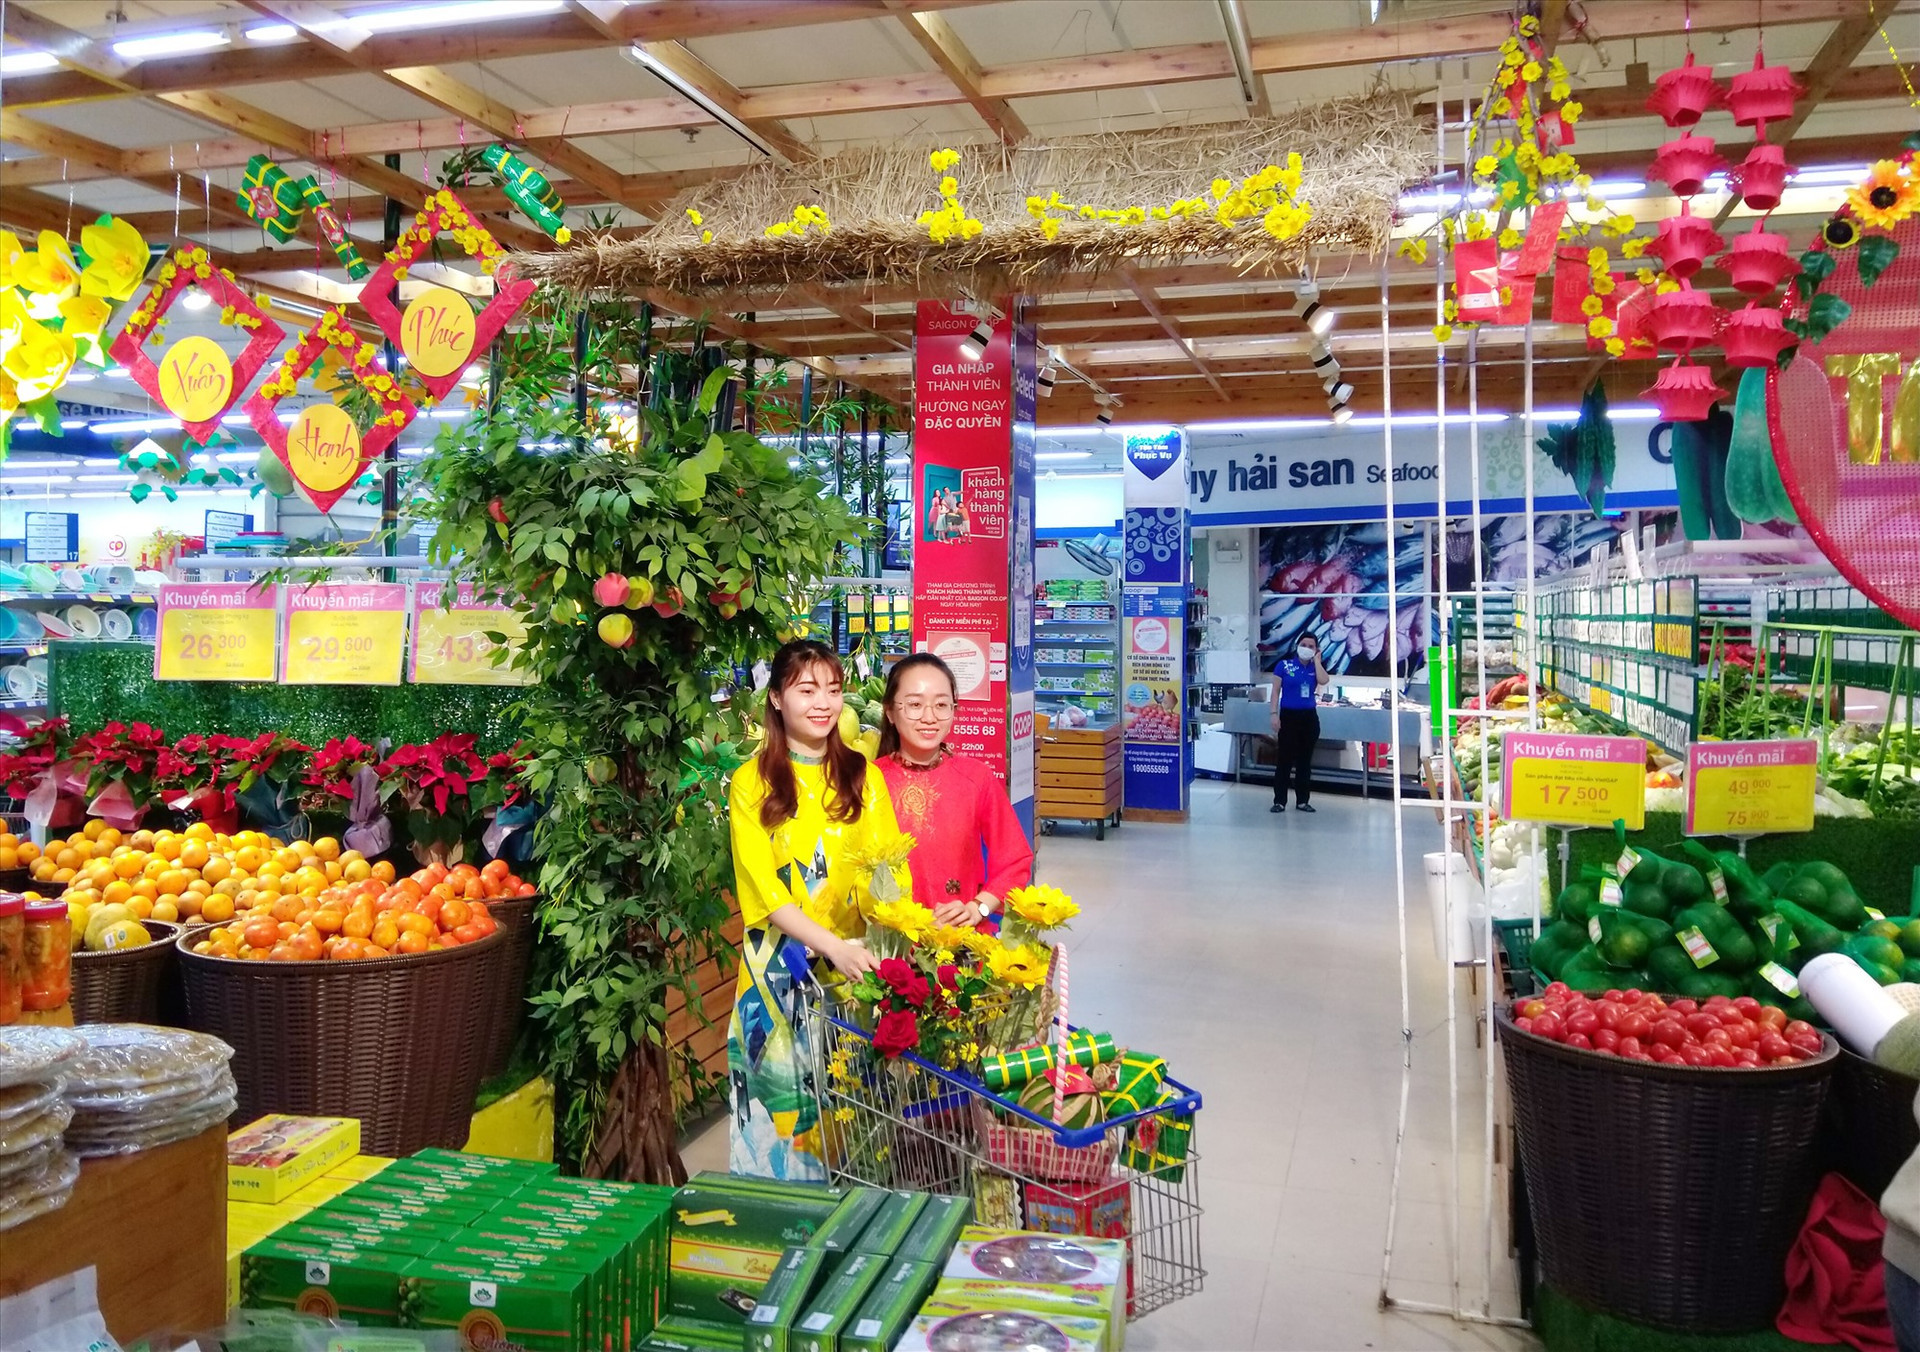 Bà Trần Thị Như Lai - Giám đốc Co.opMart Tam Kỳ cho biết, năm nay các doanh nghiệp cung cấp hàng hóa chú trọng cải thiện mẫu mã, chất lượng, đảm bảo an toàn thực phẩm. Ảnh: T.S